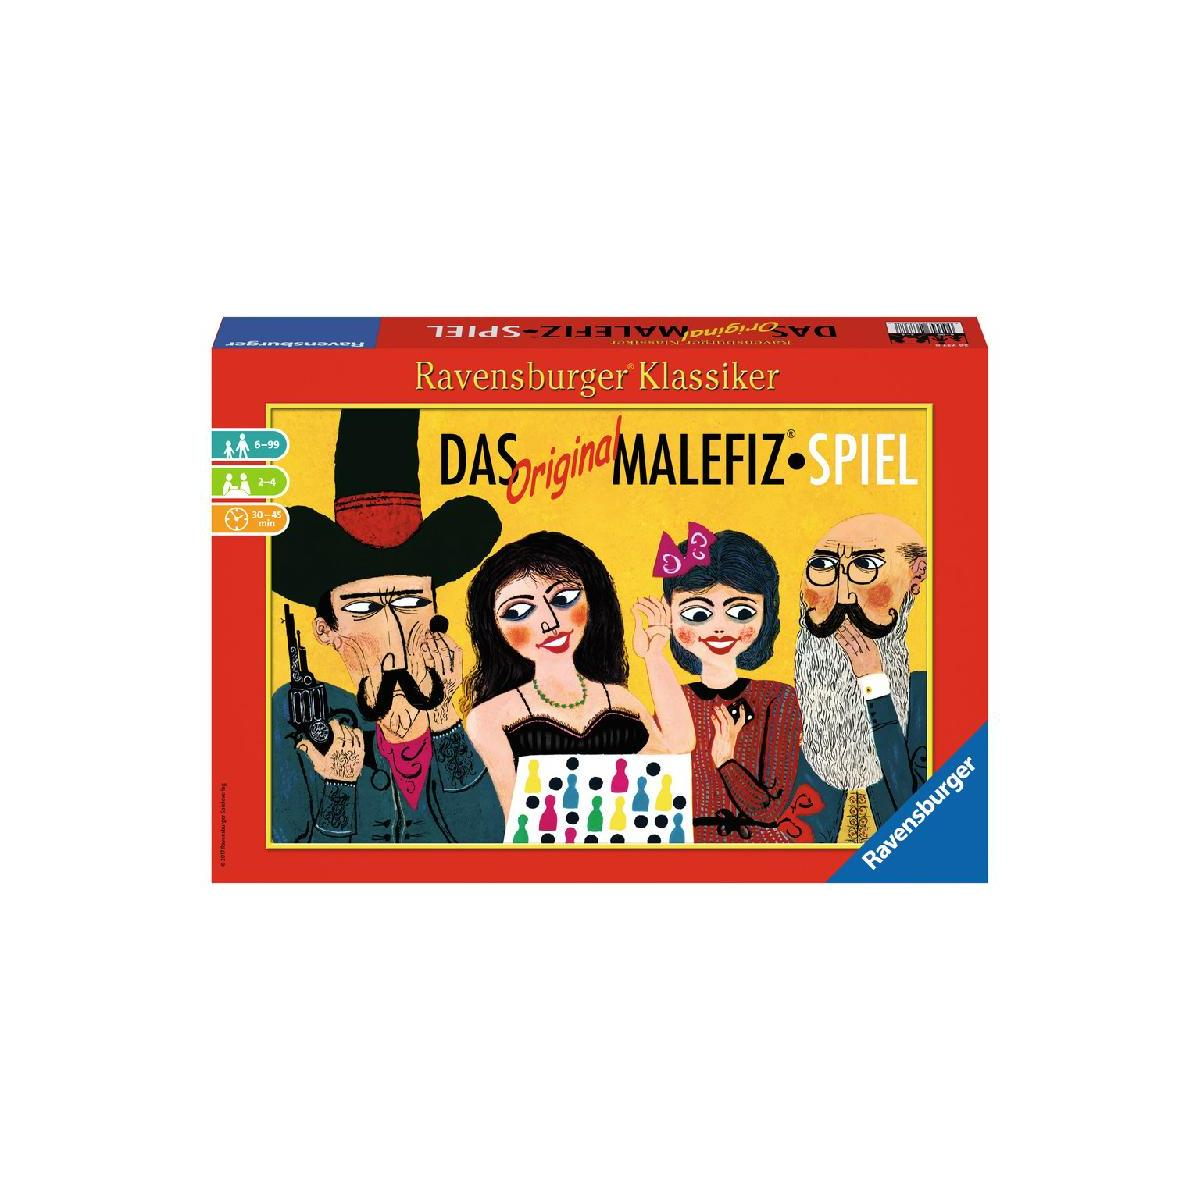 Malefiz®-Spiel Original Gesellschaftsspiel RAVENSBURGER